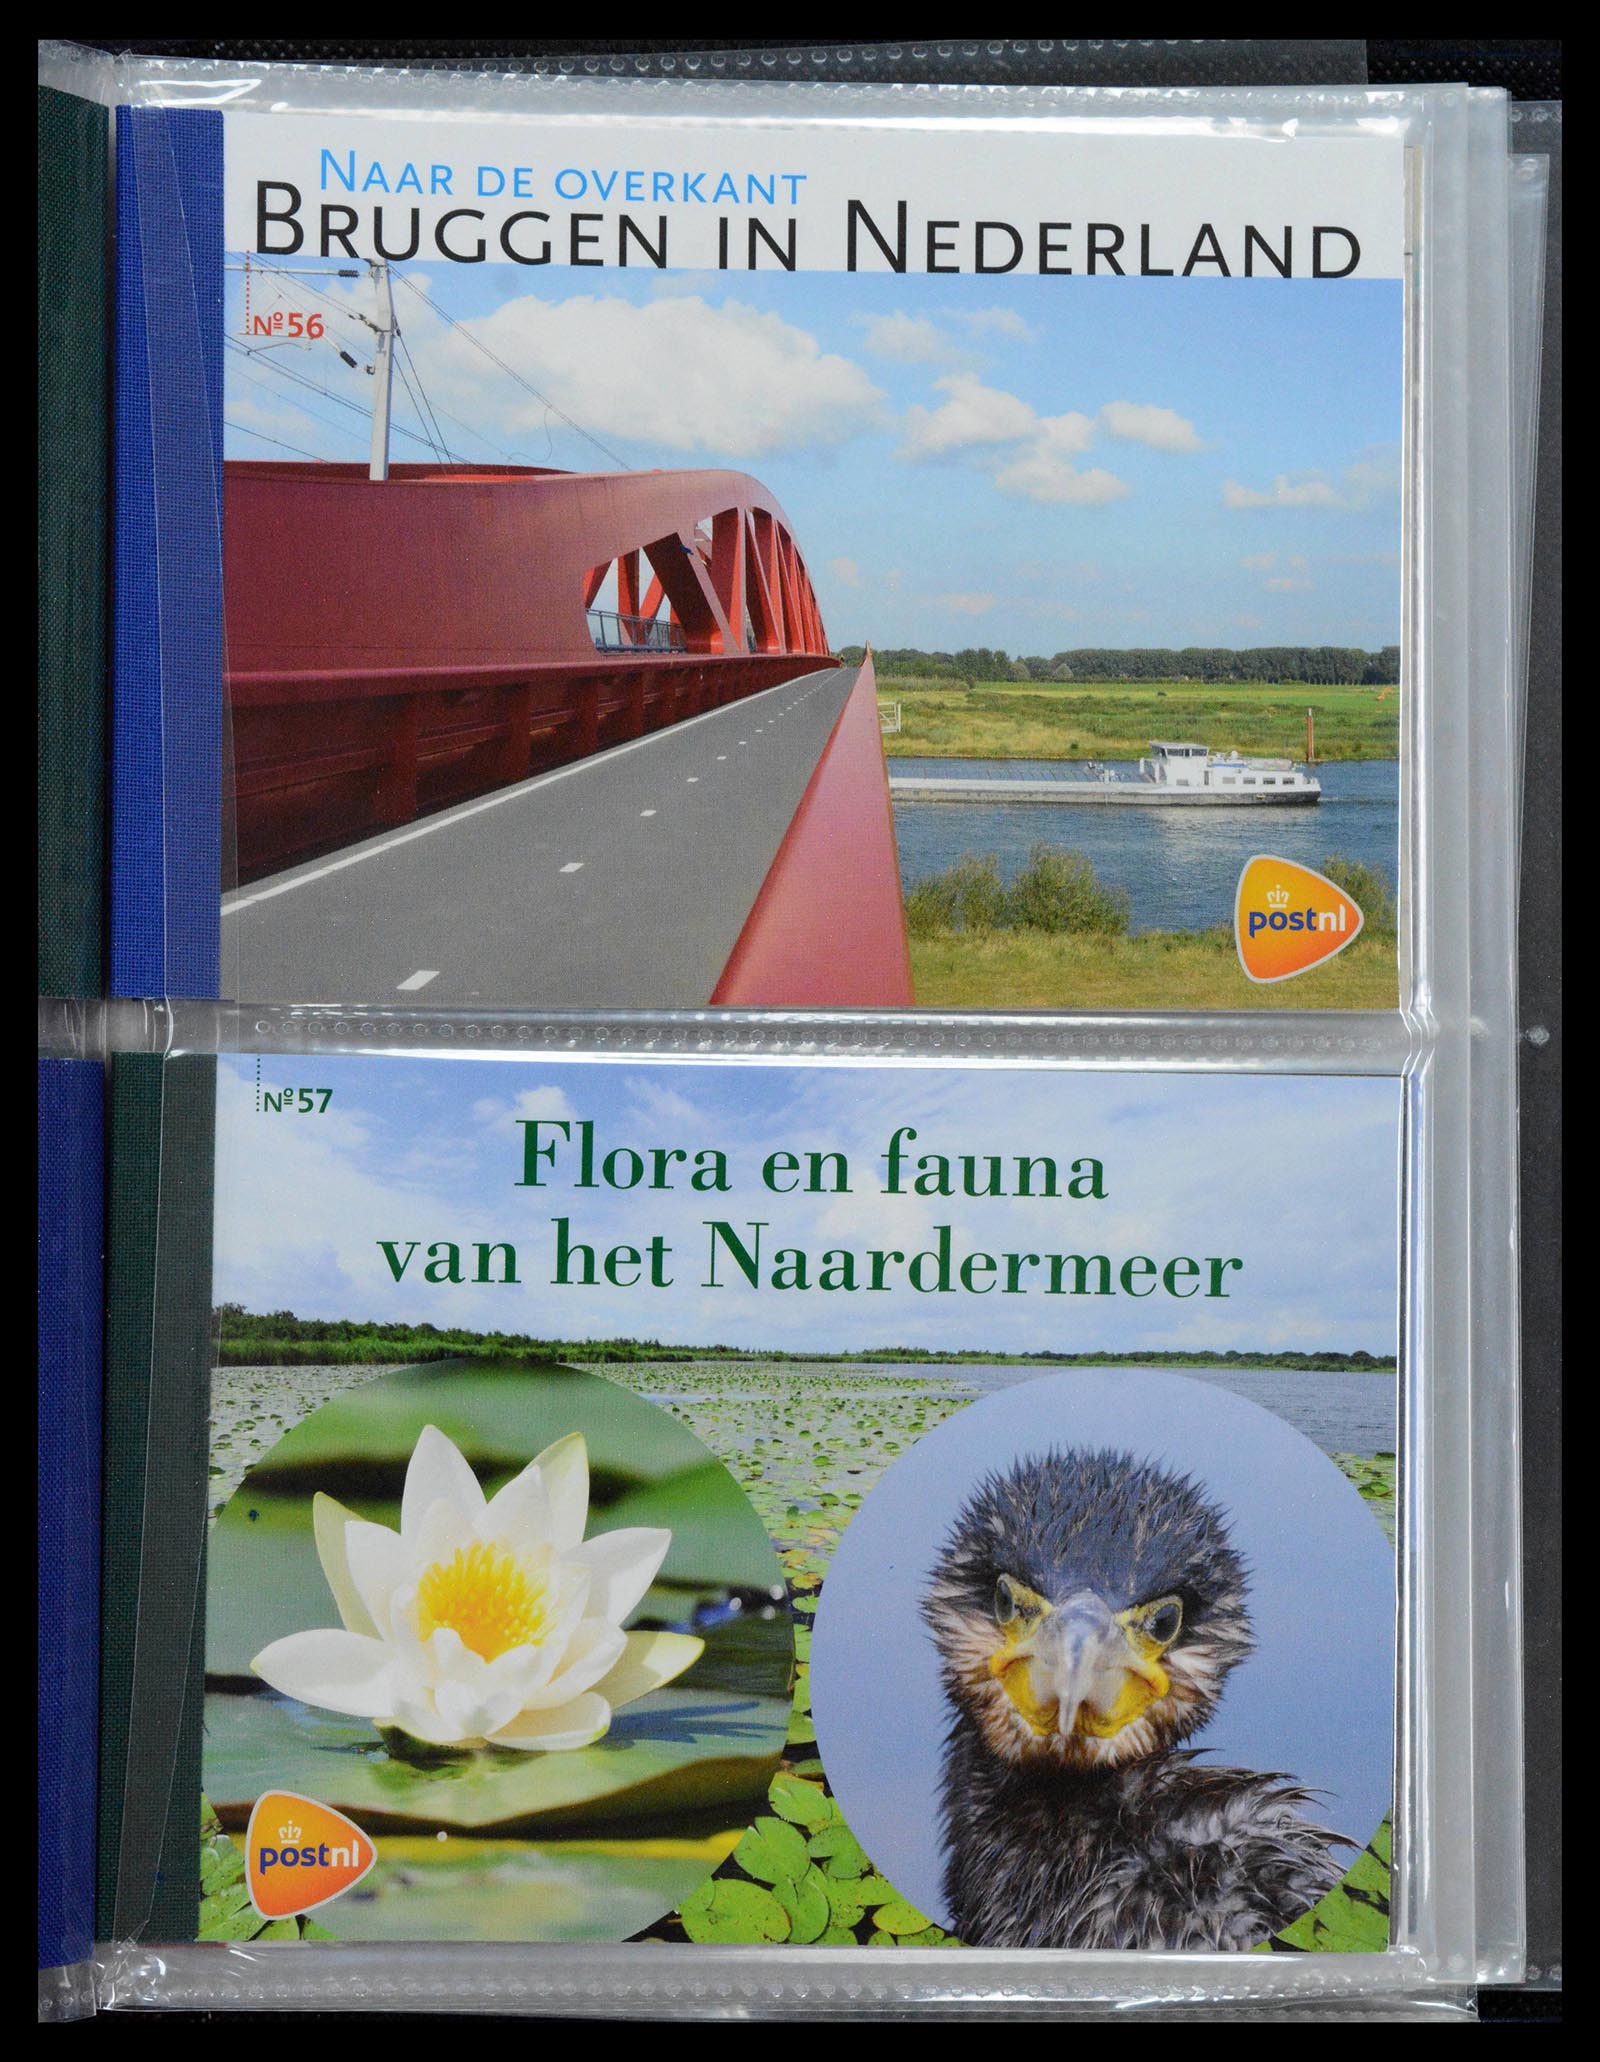 39018 0029 - Stamp collection 39018 Netherlands prestige booklets 2003-2016.